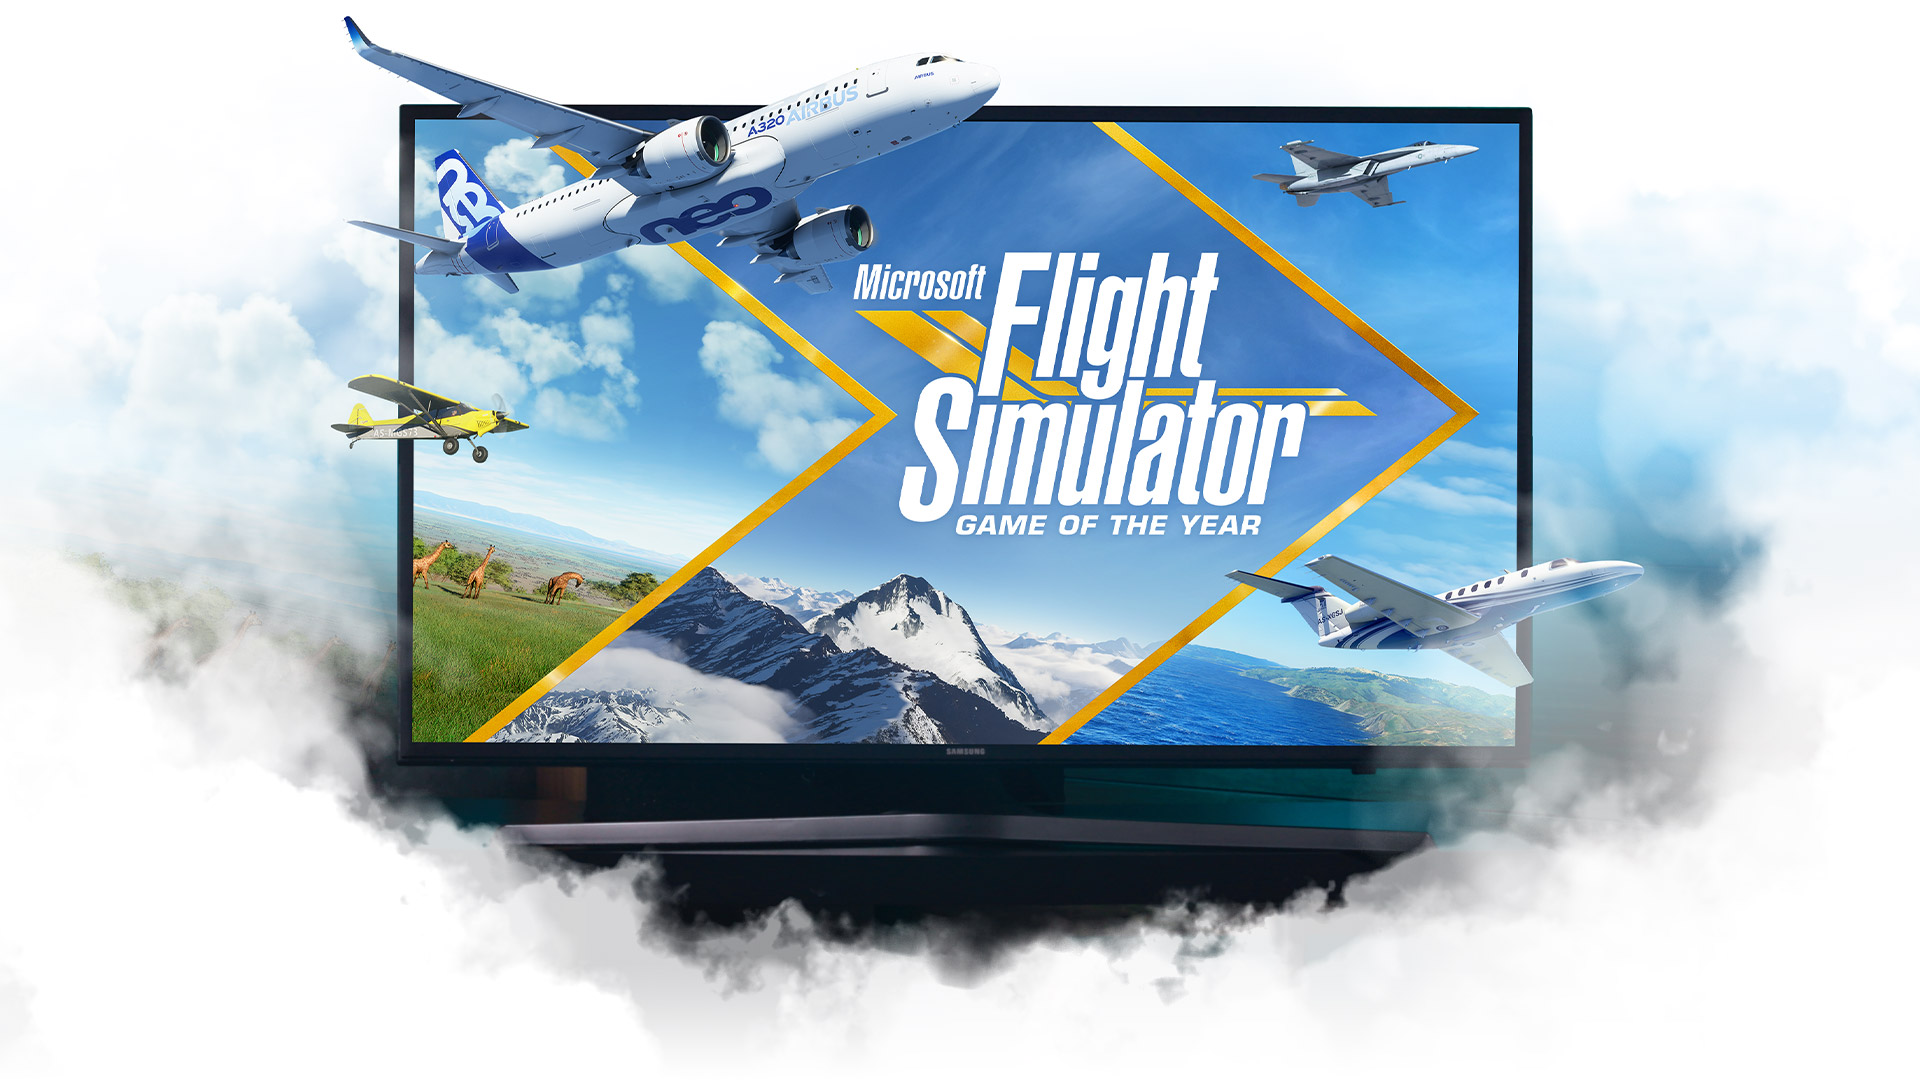 雲に囲まれたテレビから浮かび上がる『Microsoft Flight Simulator』の飛行機